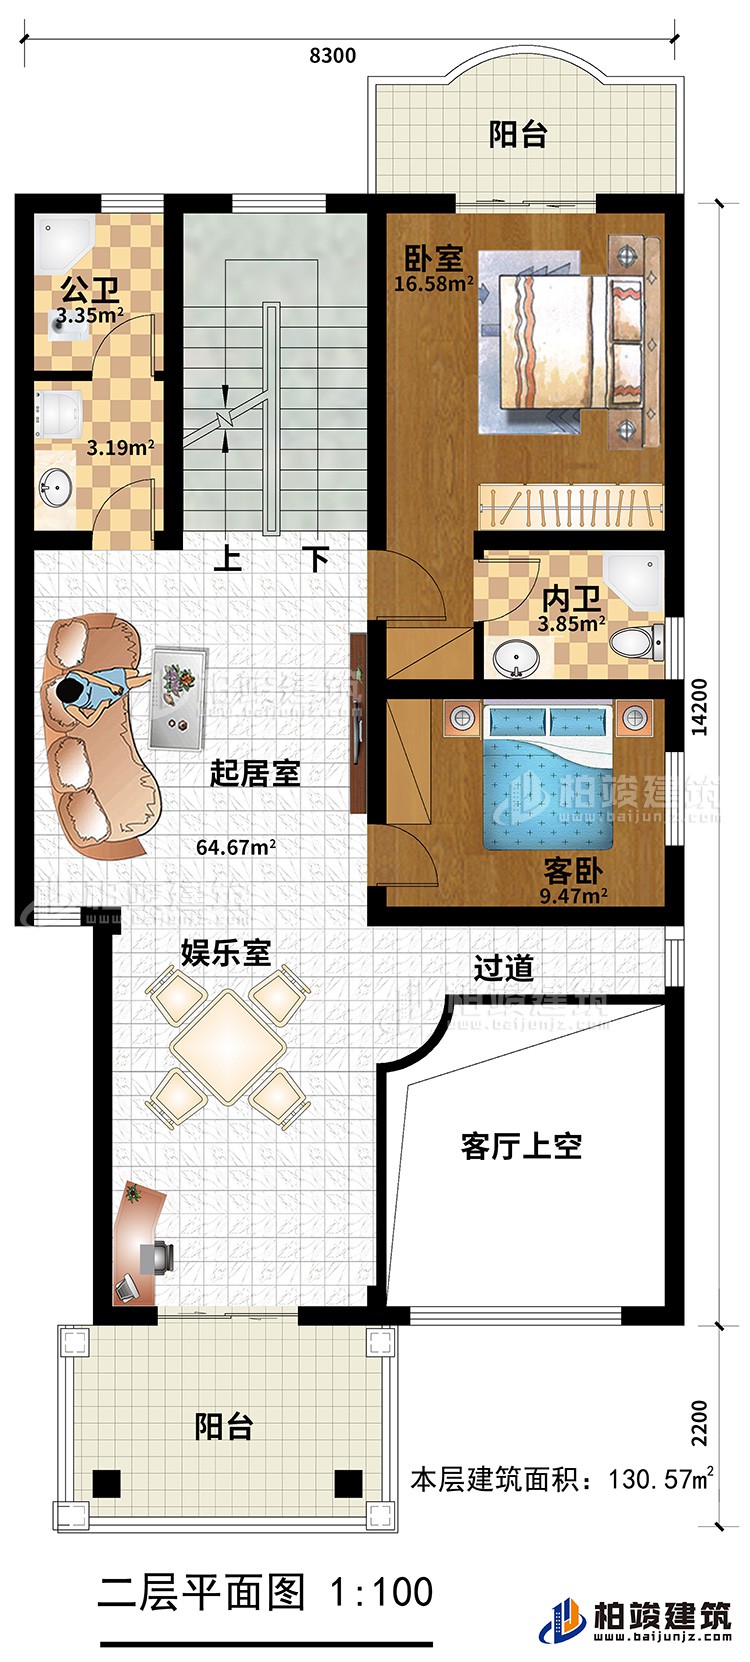 二层：主卧，卧室，内卫，公卫，2阳台，娱乐室，起居室，客厅上空、过道